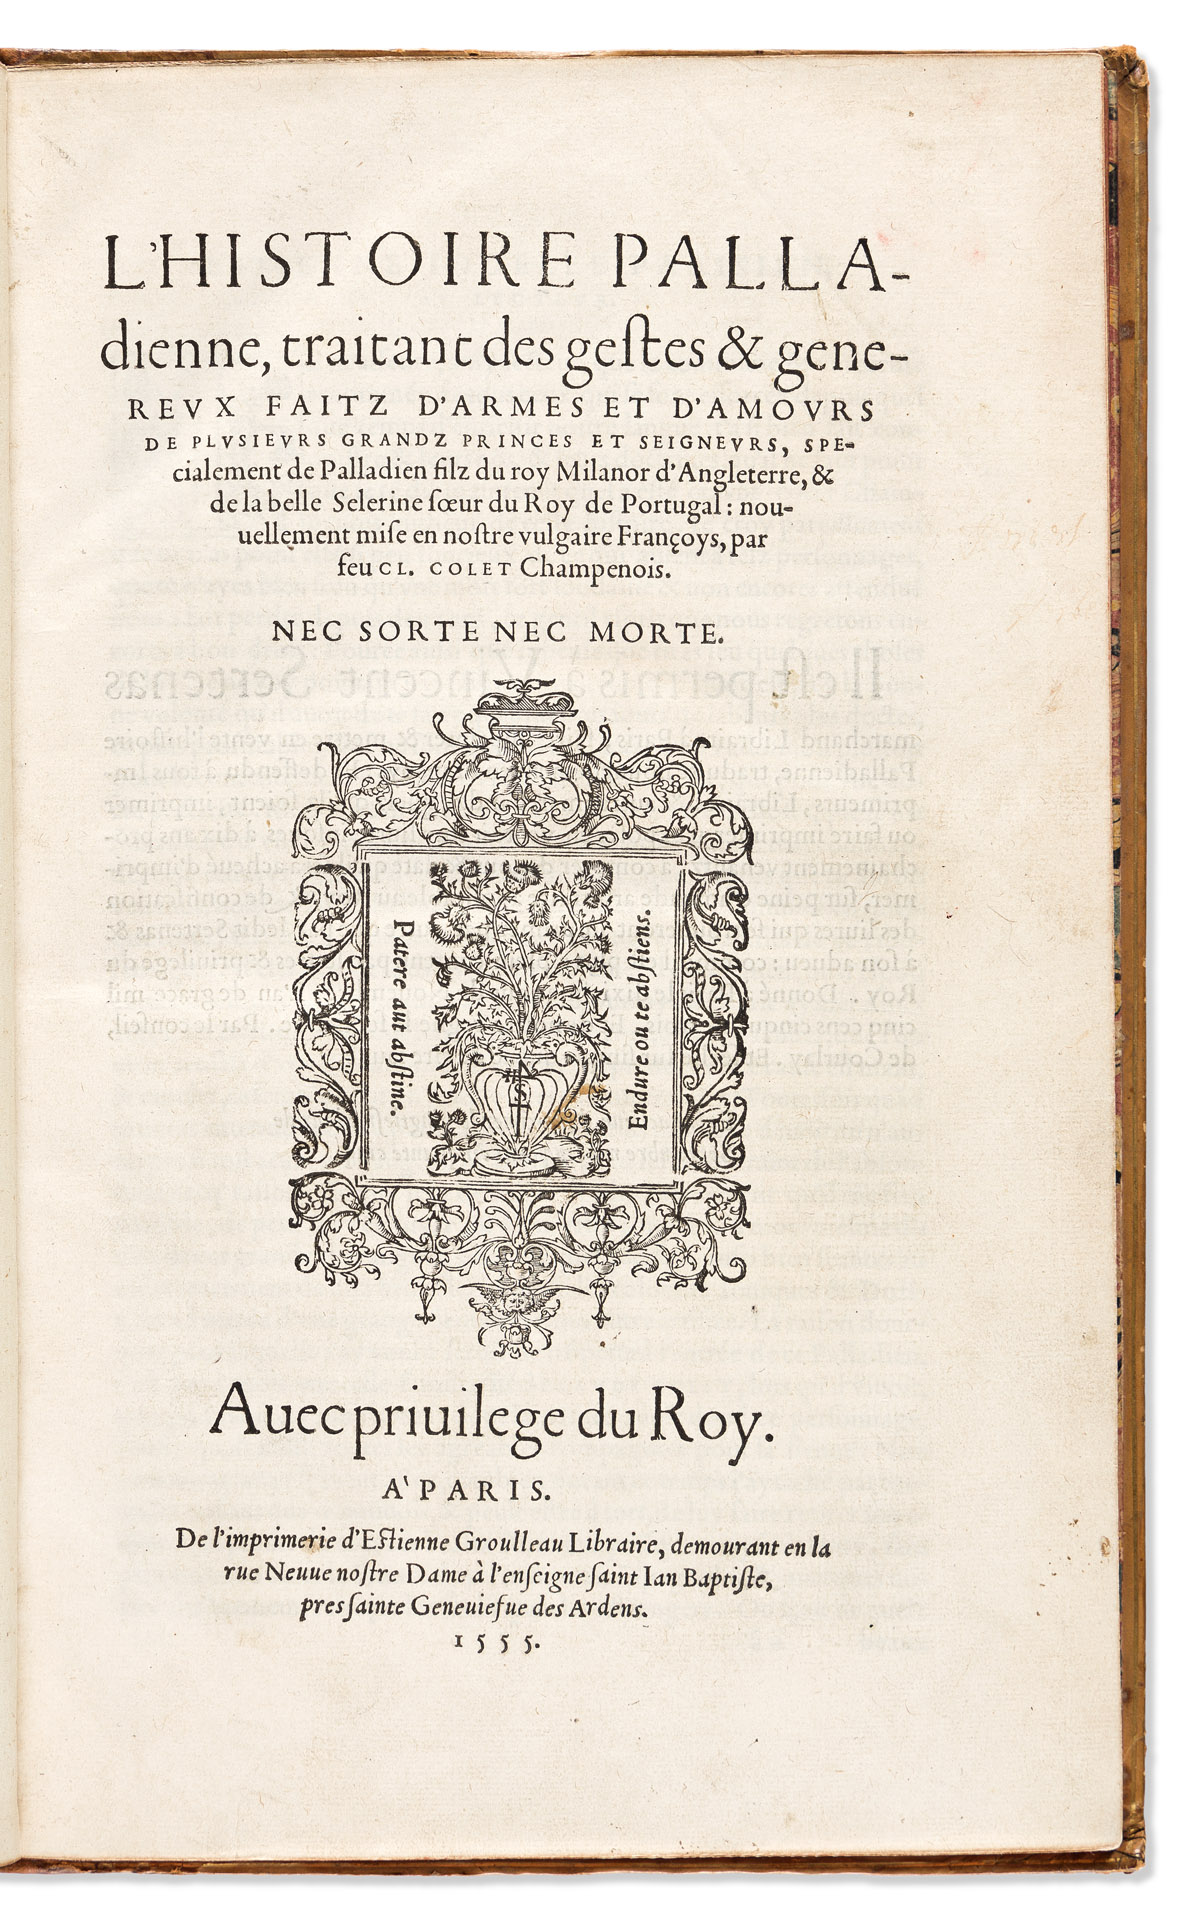 Colet, Claude trans. (fl. 16th century) LHistoire Palladienne, Traitant des Gestes & Genereux Faitz dArmes et dAmours de Plusieurs G